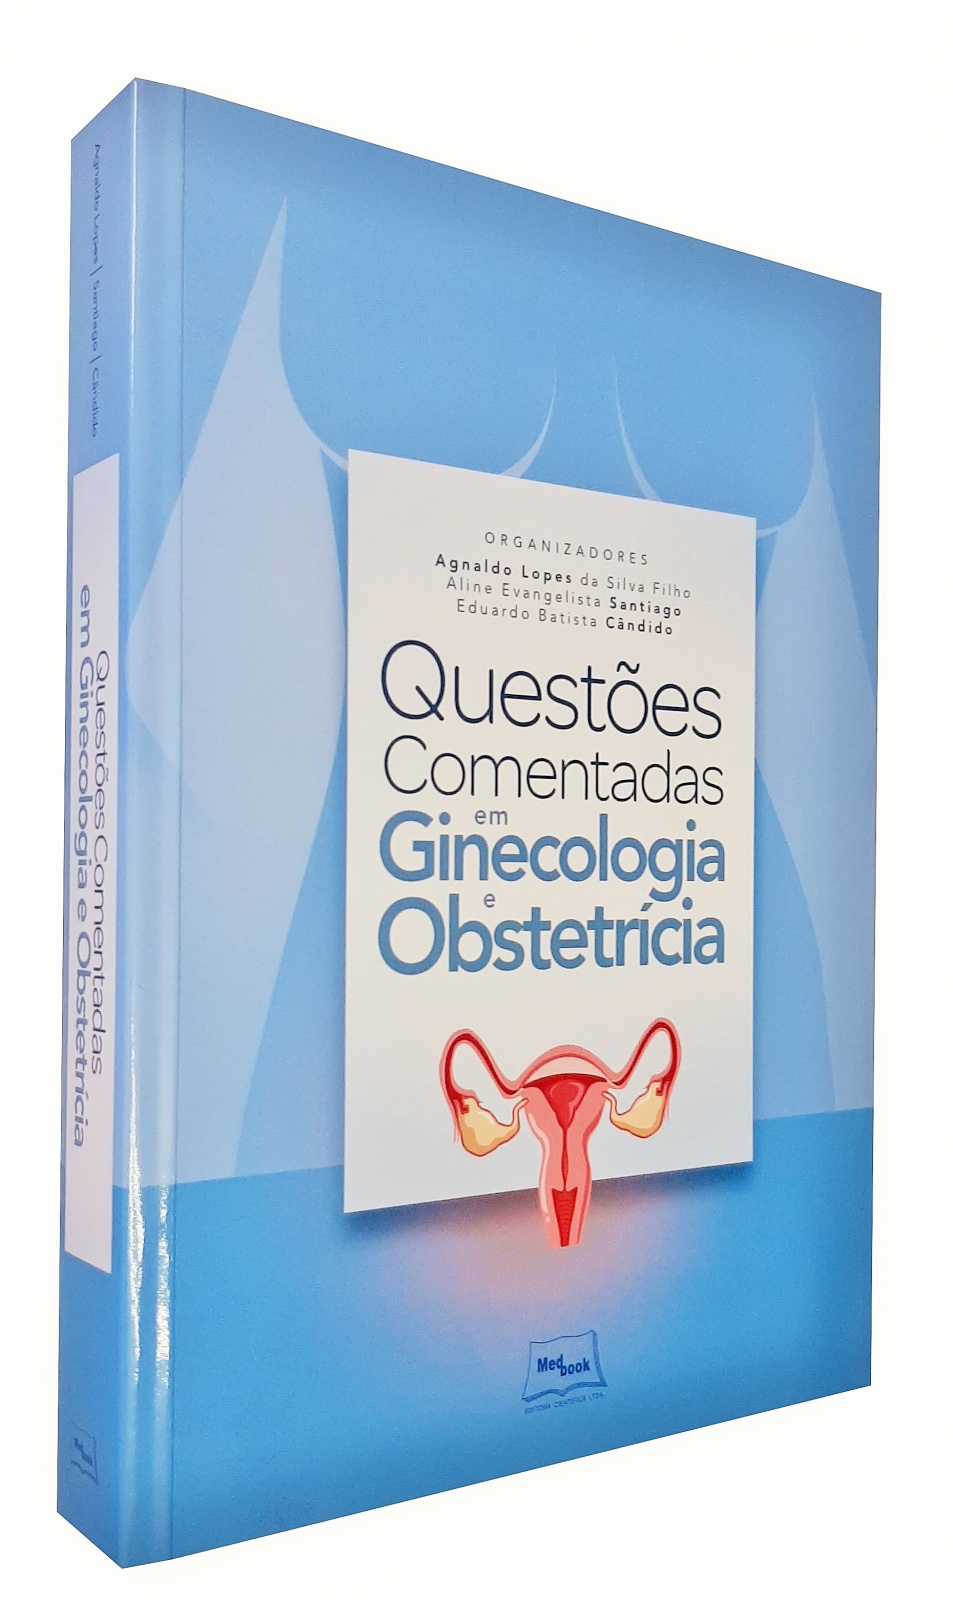 Questões Comentadas Em Ginecologia E Obstetrícia